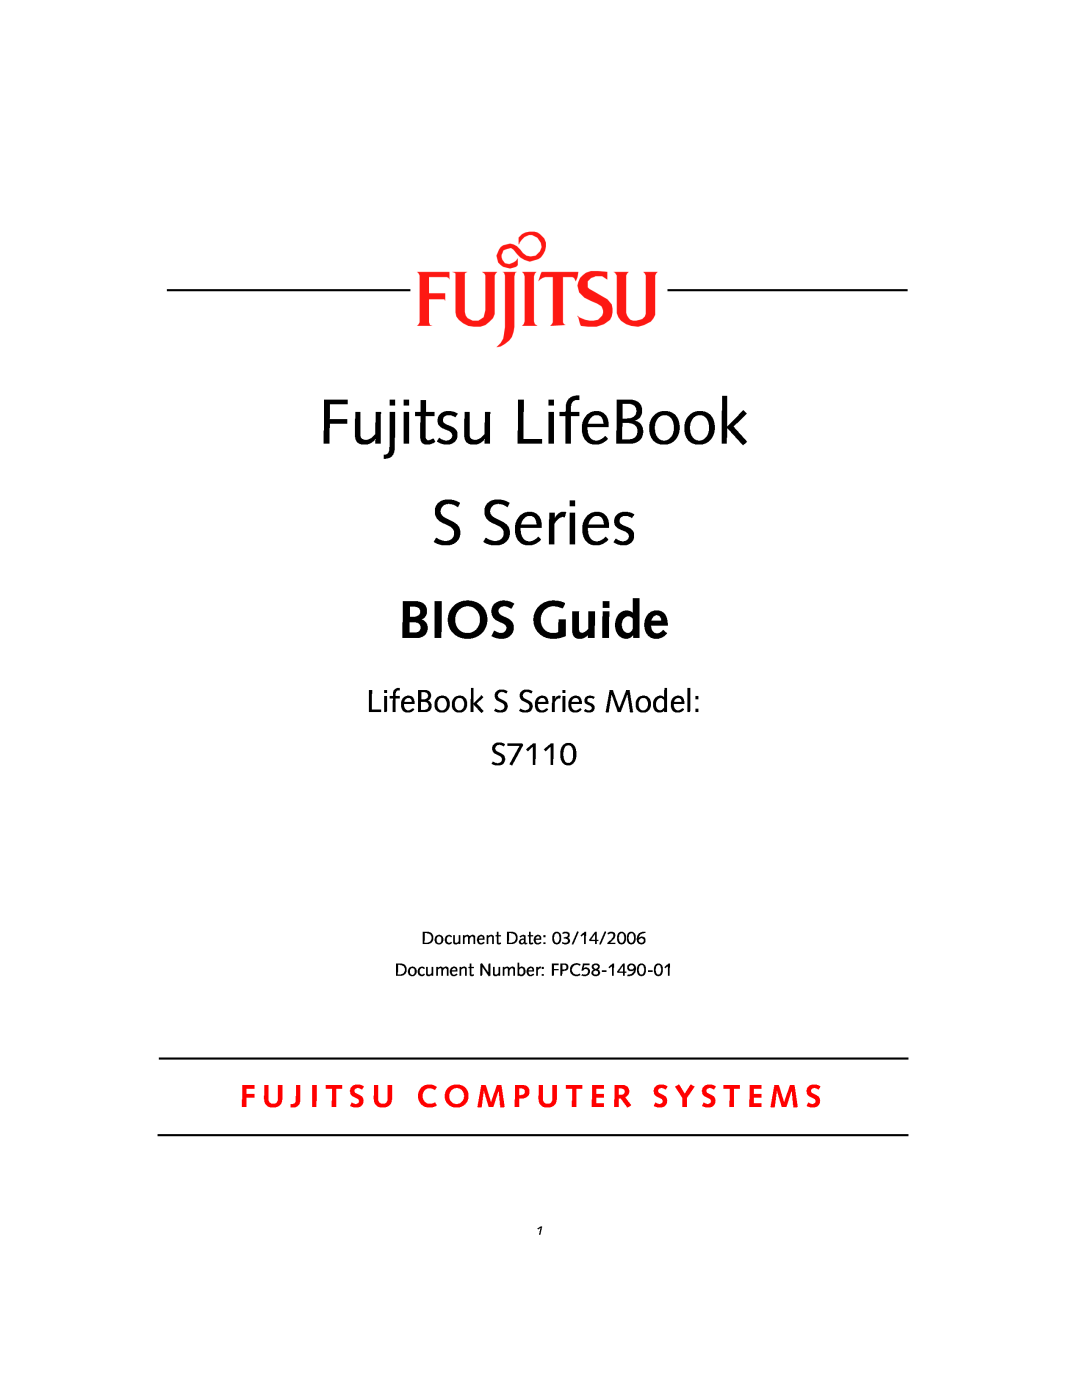 Fujitsu manual Fujitsu LifeBook S Series, BIOS Guide, LifeBook S Series Model S7110 